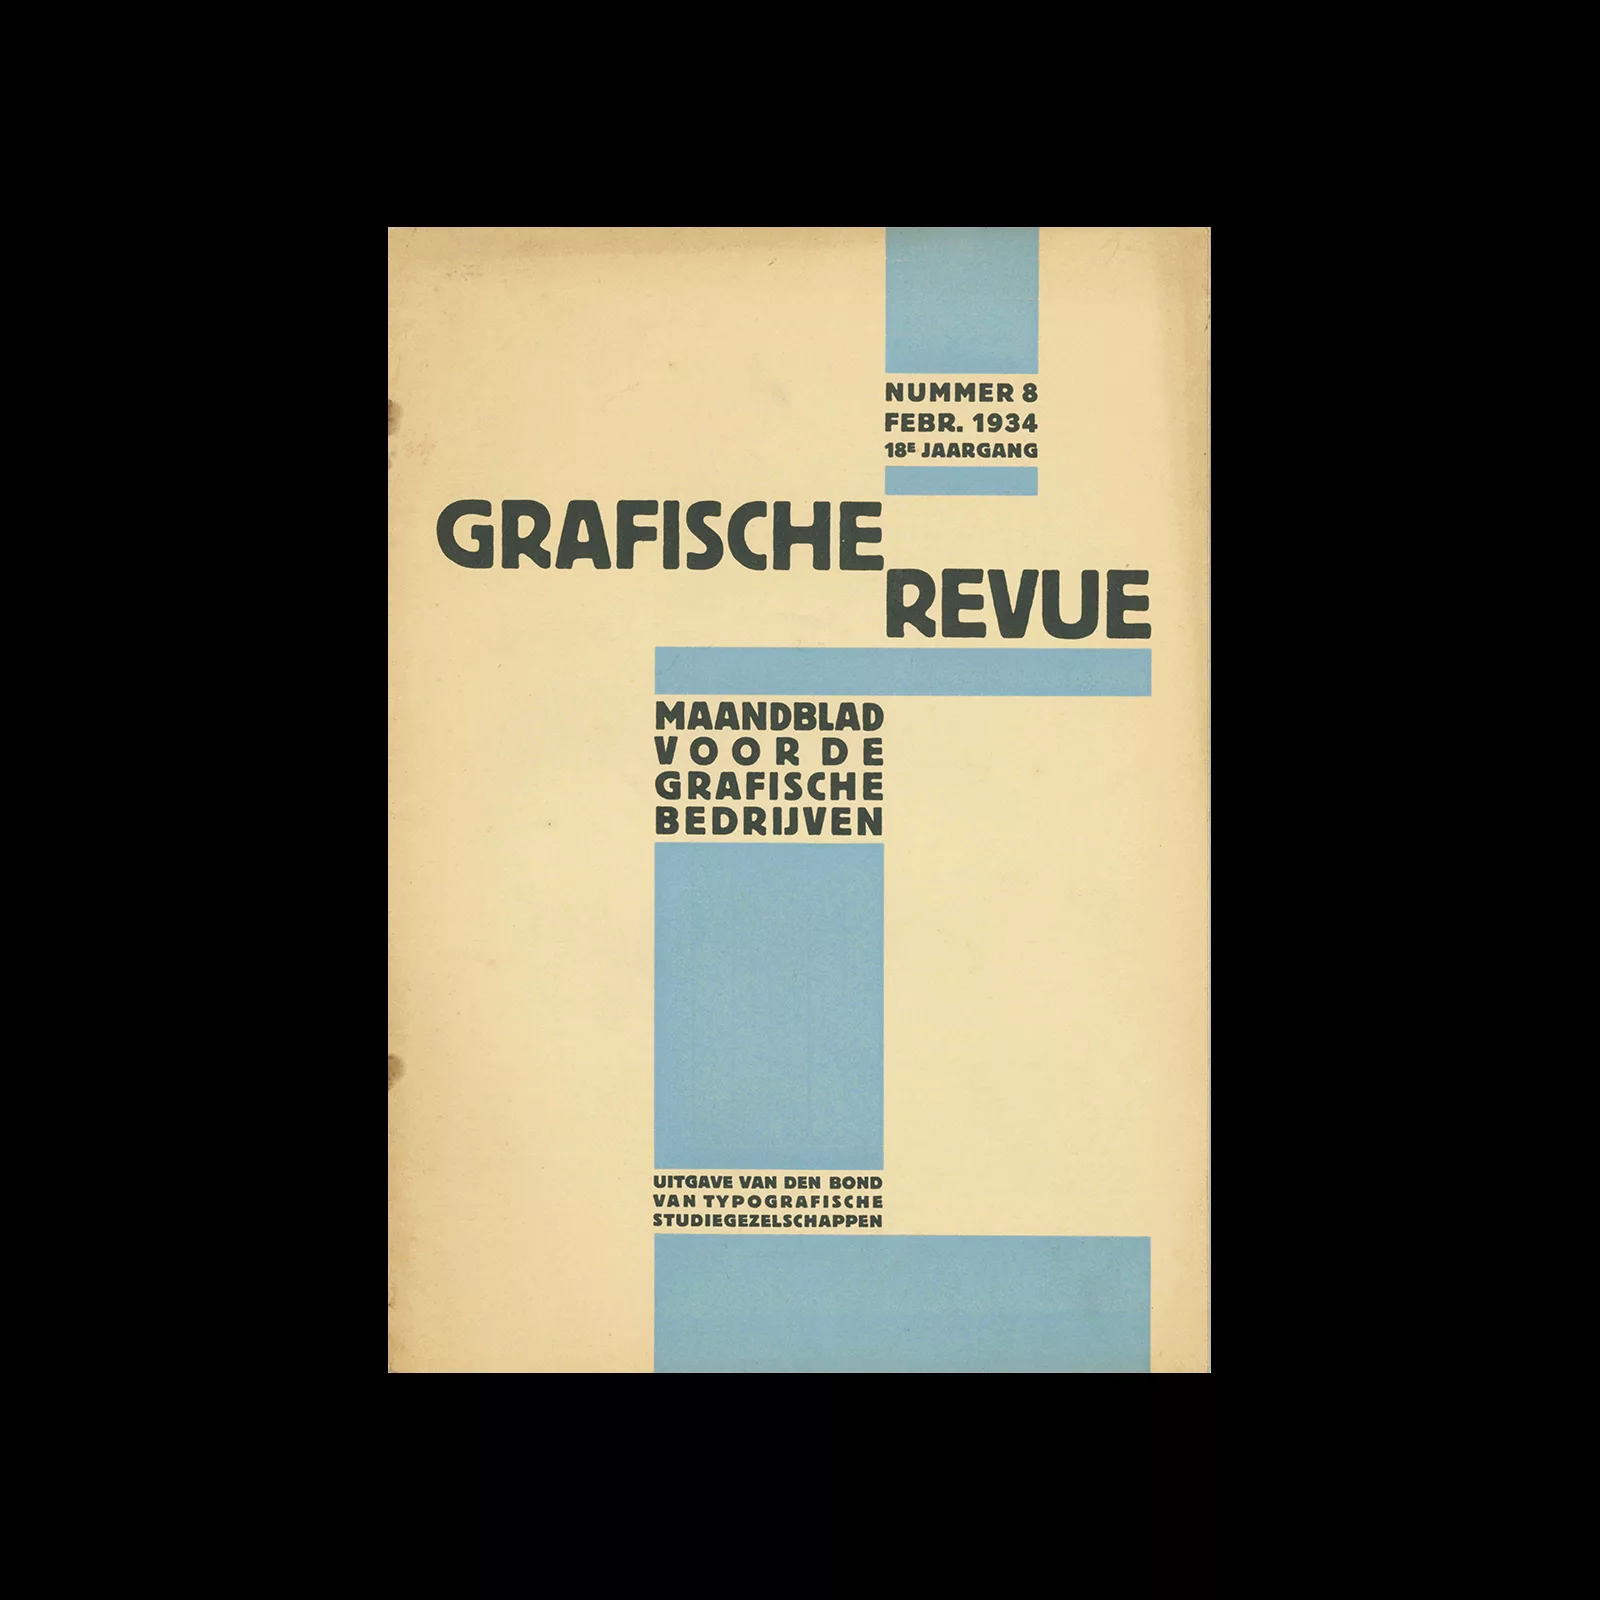 Graphische Revue, 18 Jaargang, Febr 1934